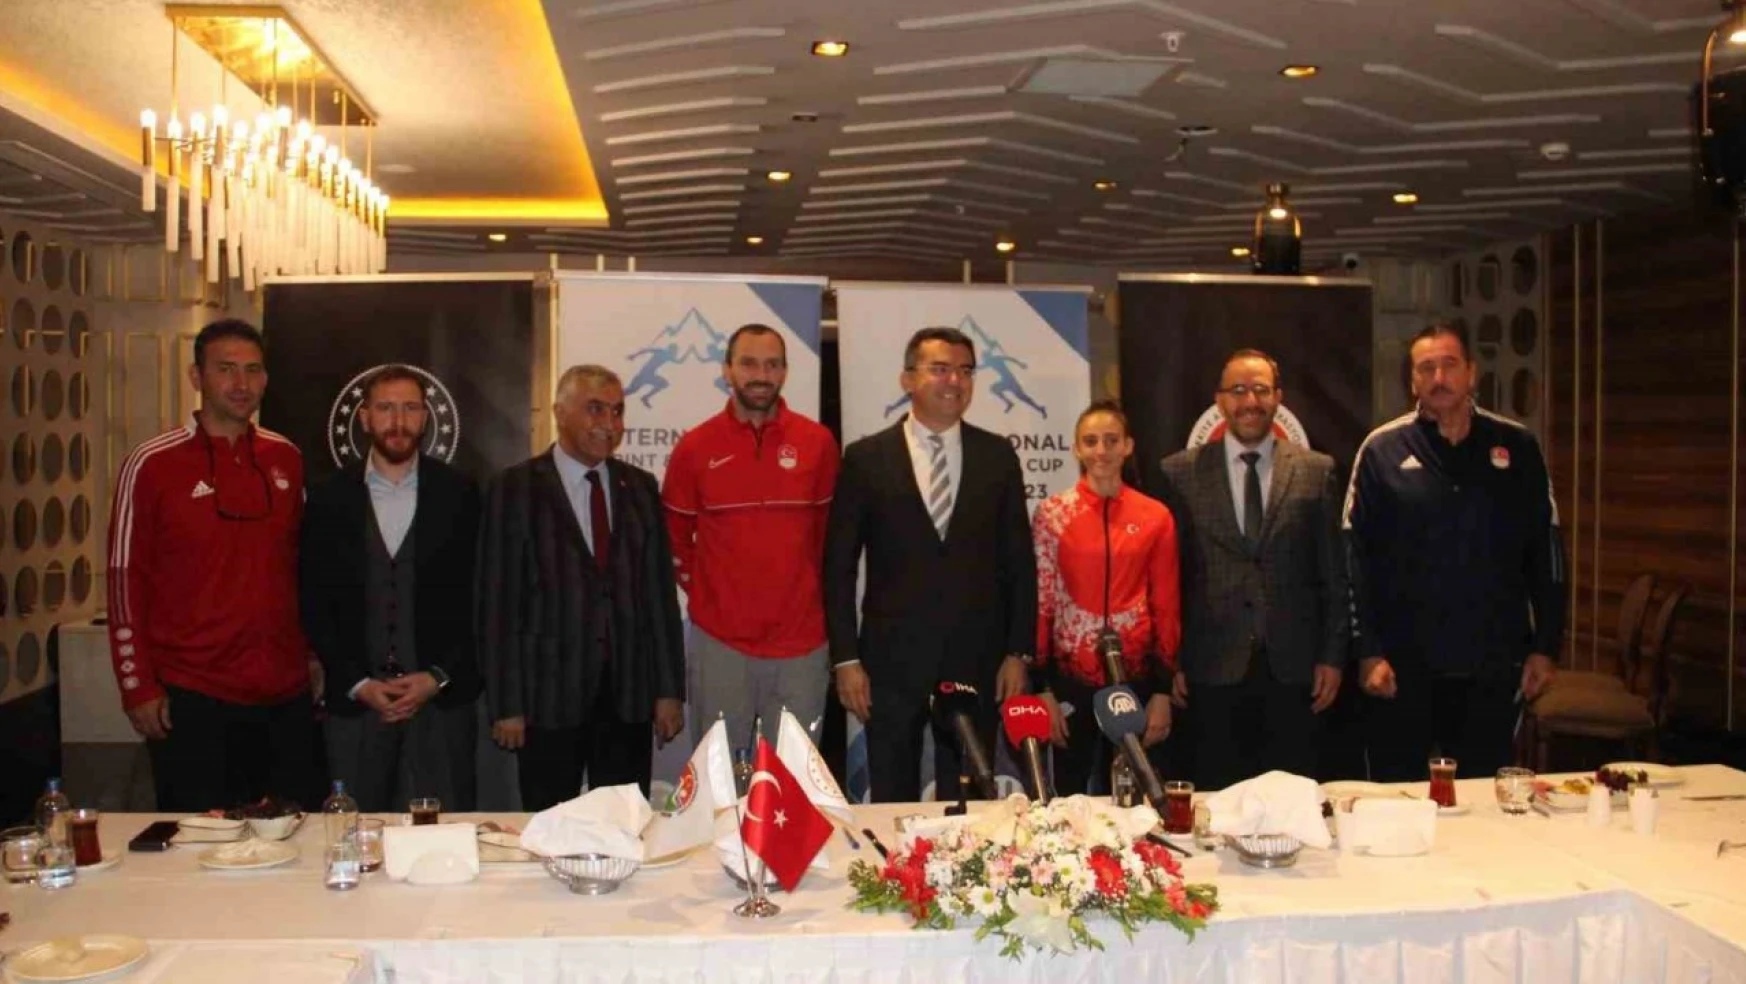 Uluslararası Sprint ve Bayrak Kupası Yarışları Erzurum'da yapılacak